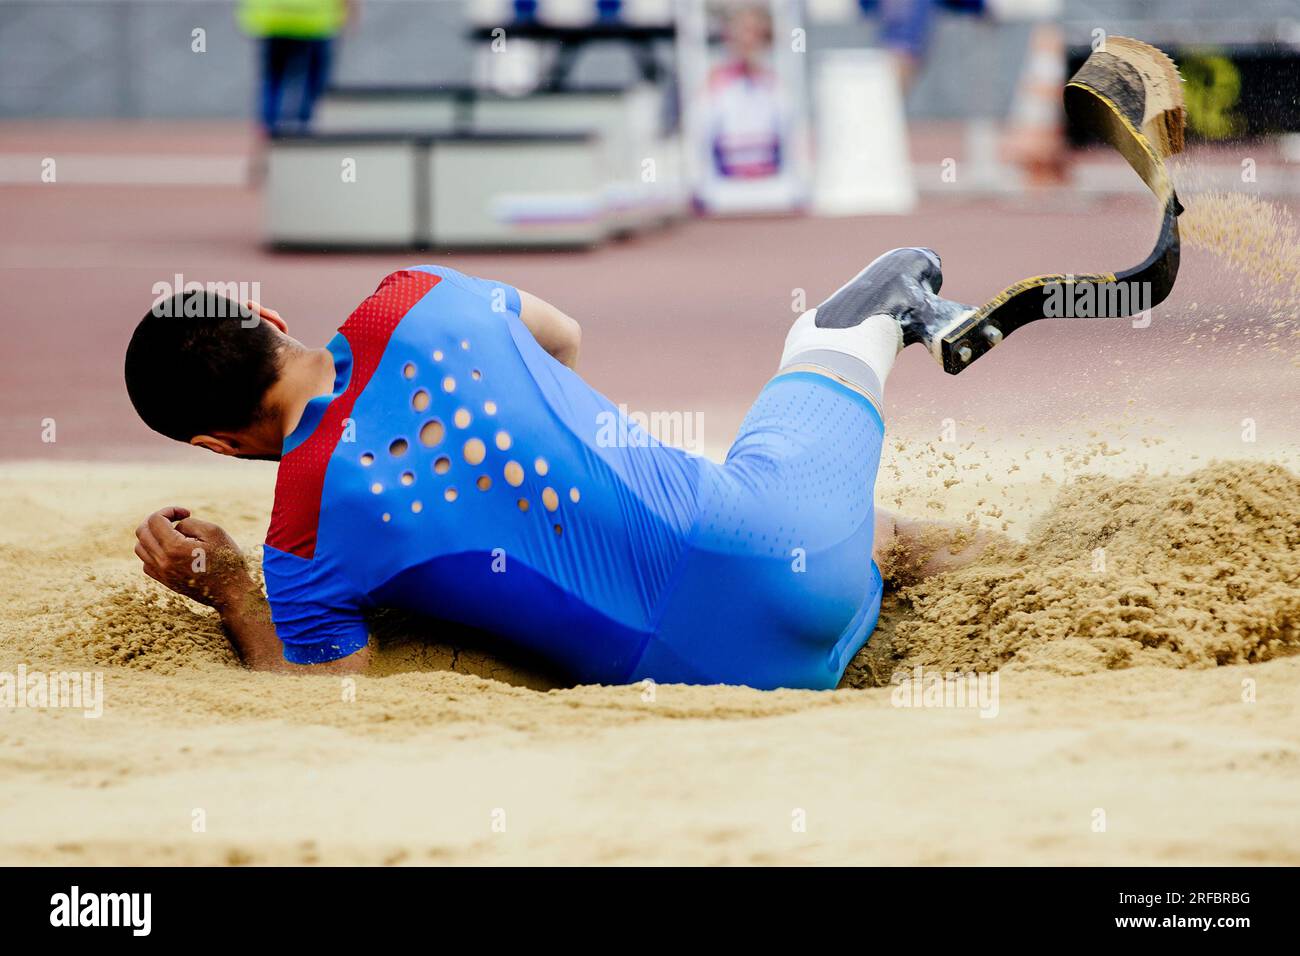 Parapathleten-Langsprung, Landung im Sand bei sportlichen Wettkämpfen, Sommersportspielen Stockfoto